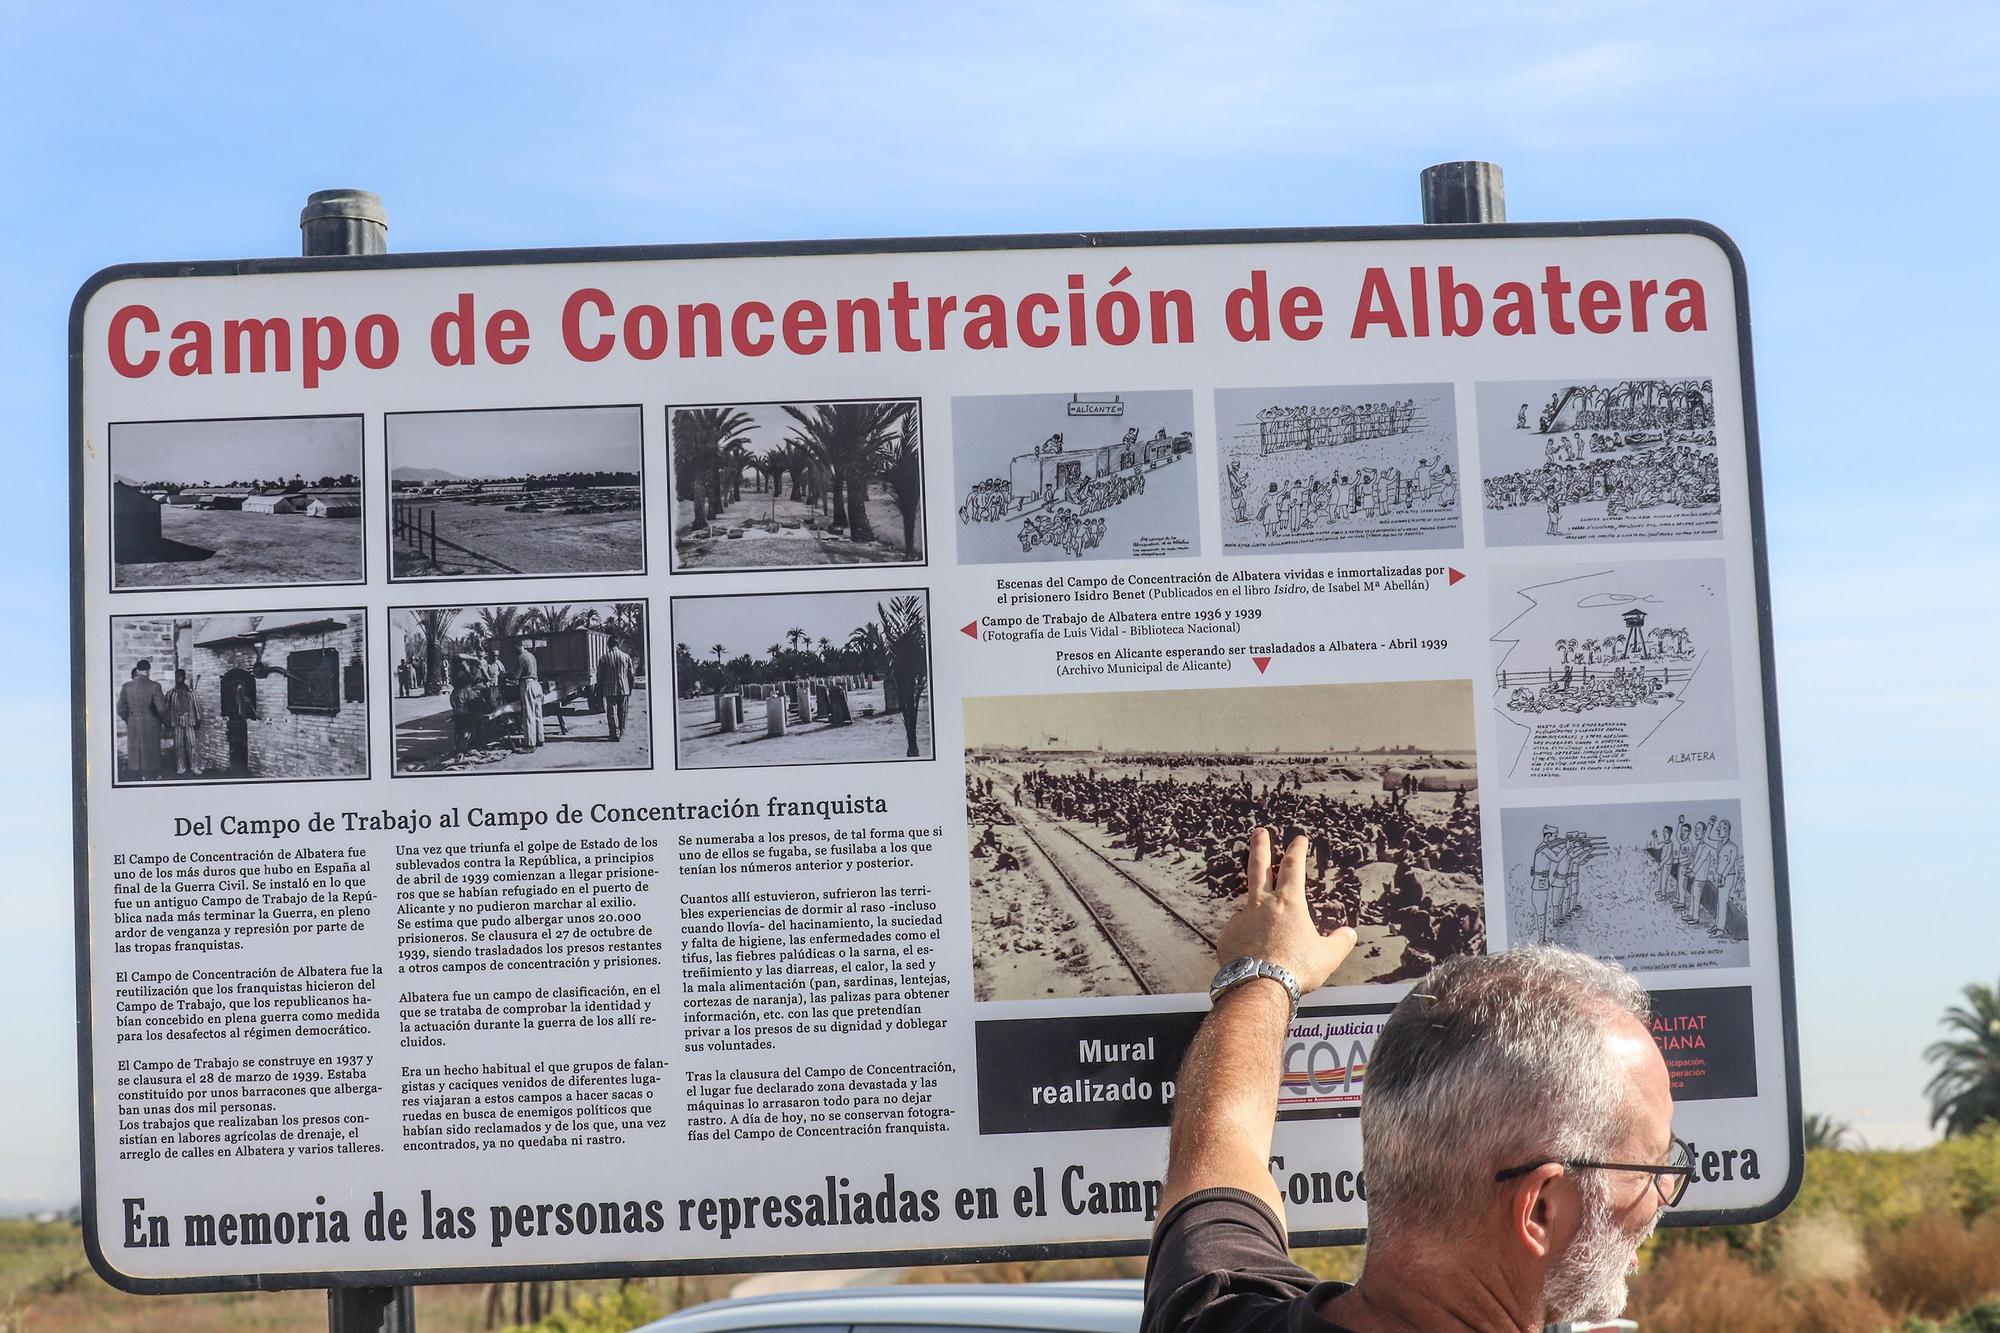 Tercera campaña arqueológica en el campo de concentración de Albatera